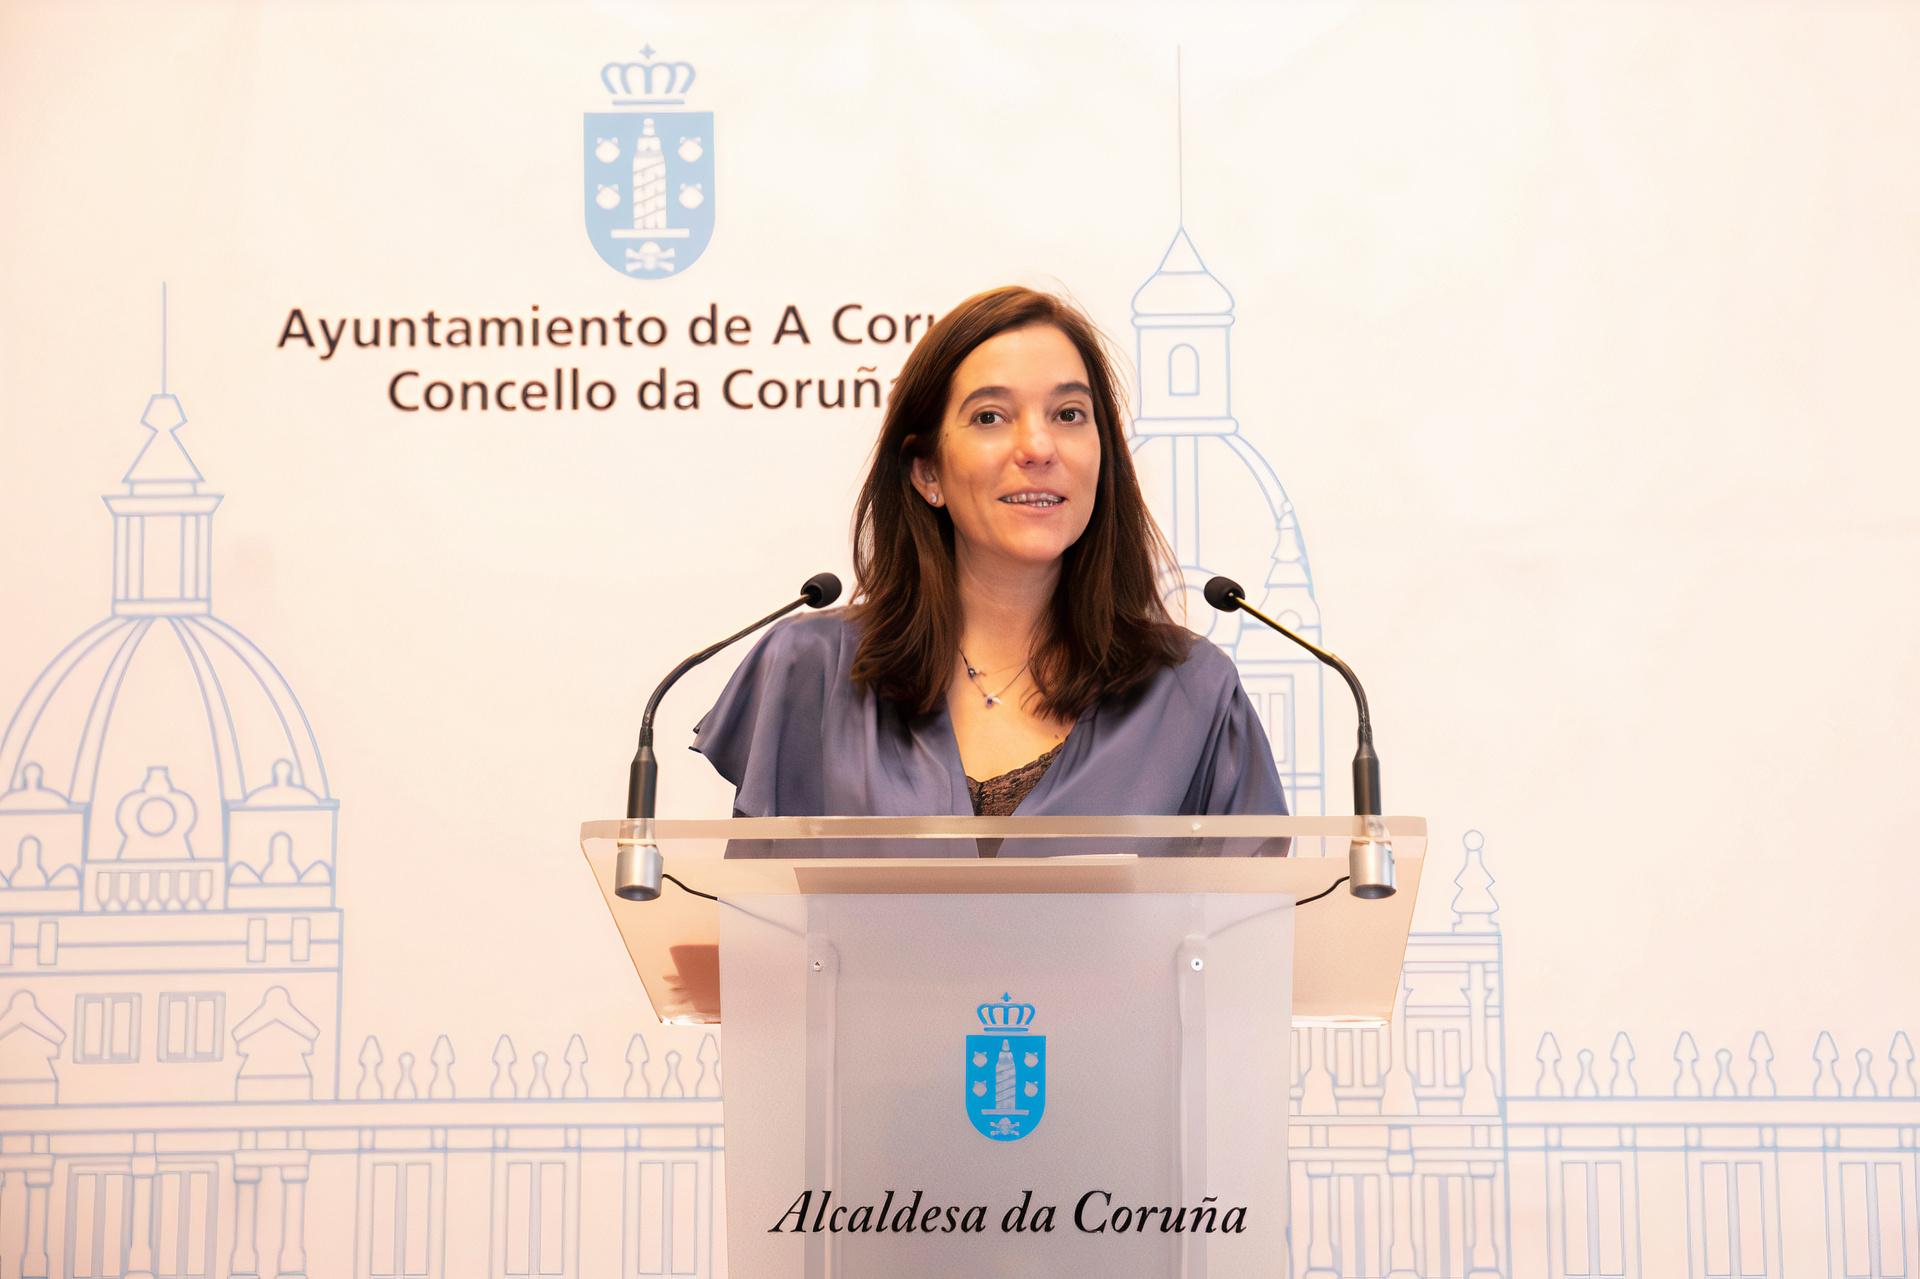 Inés Rey, alcaldesa de A Coruá